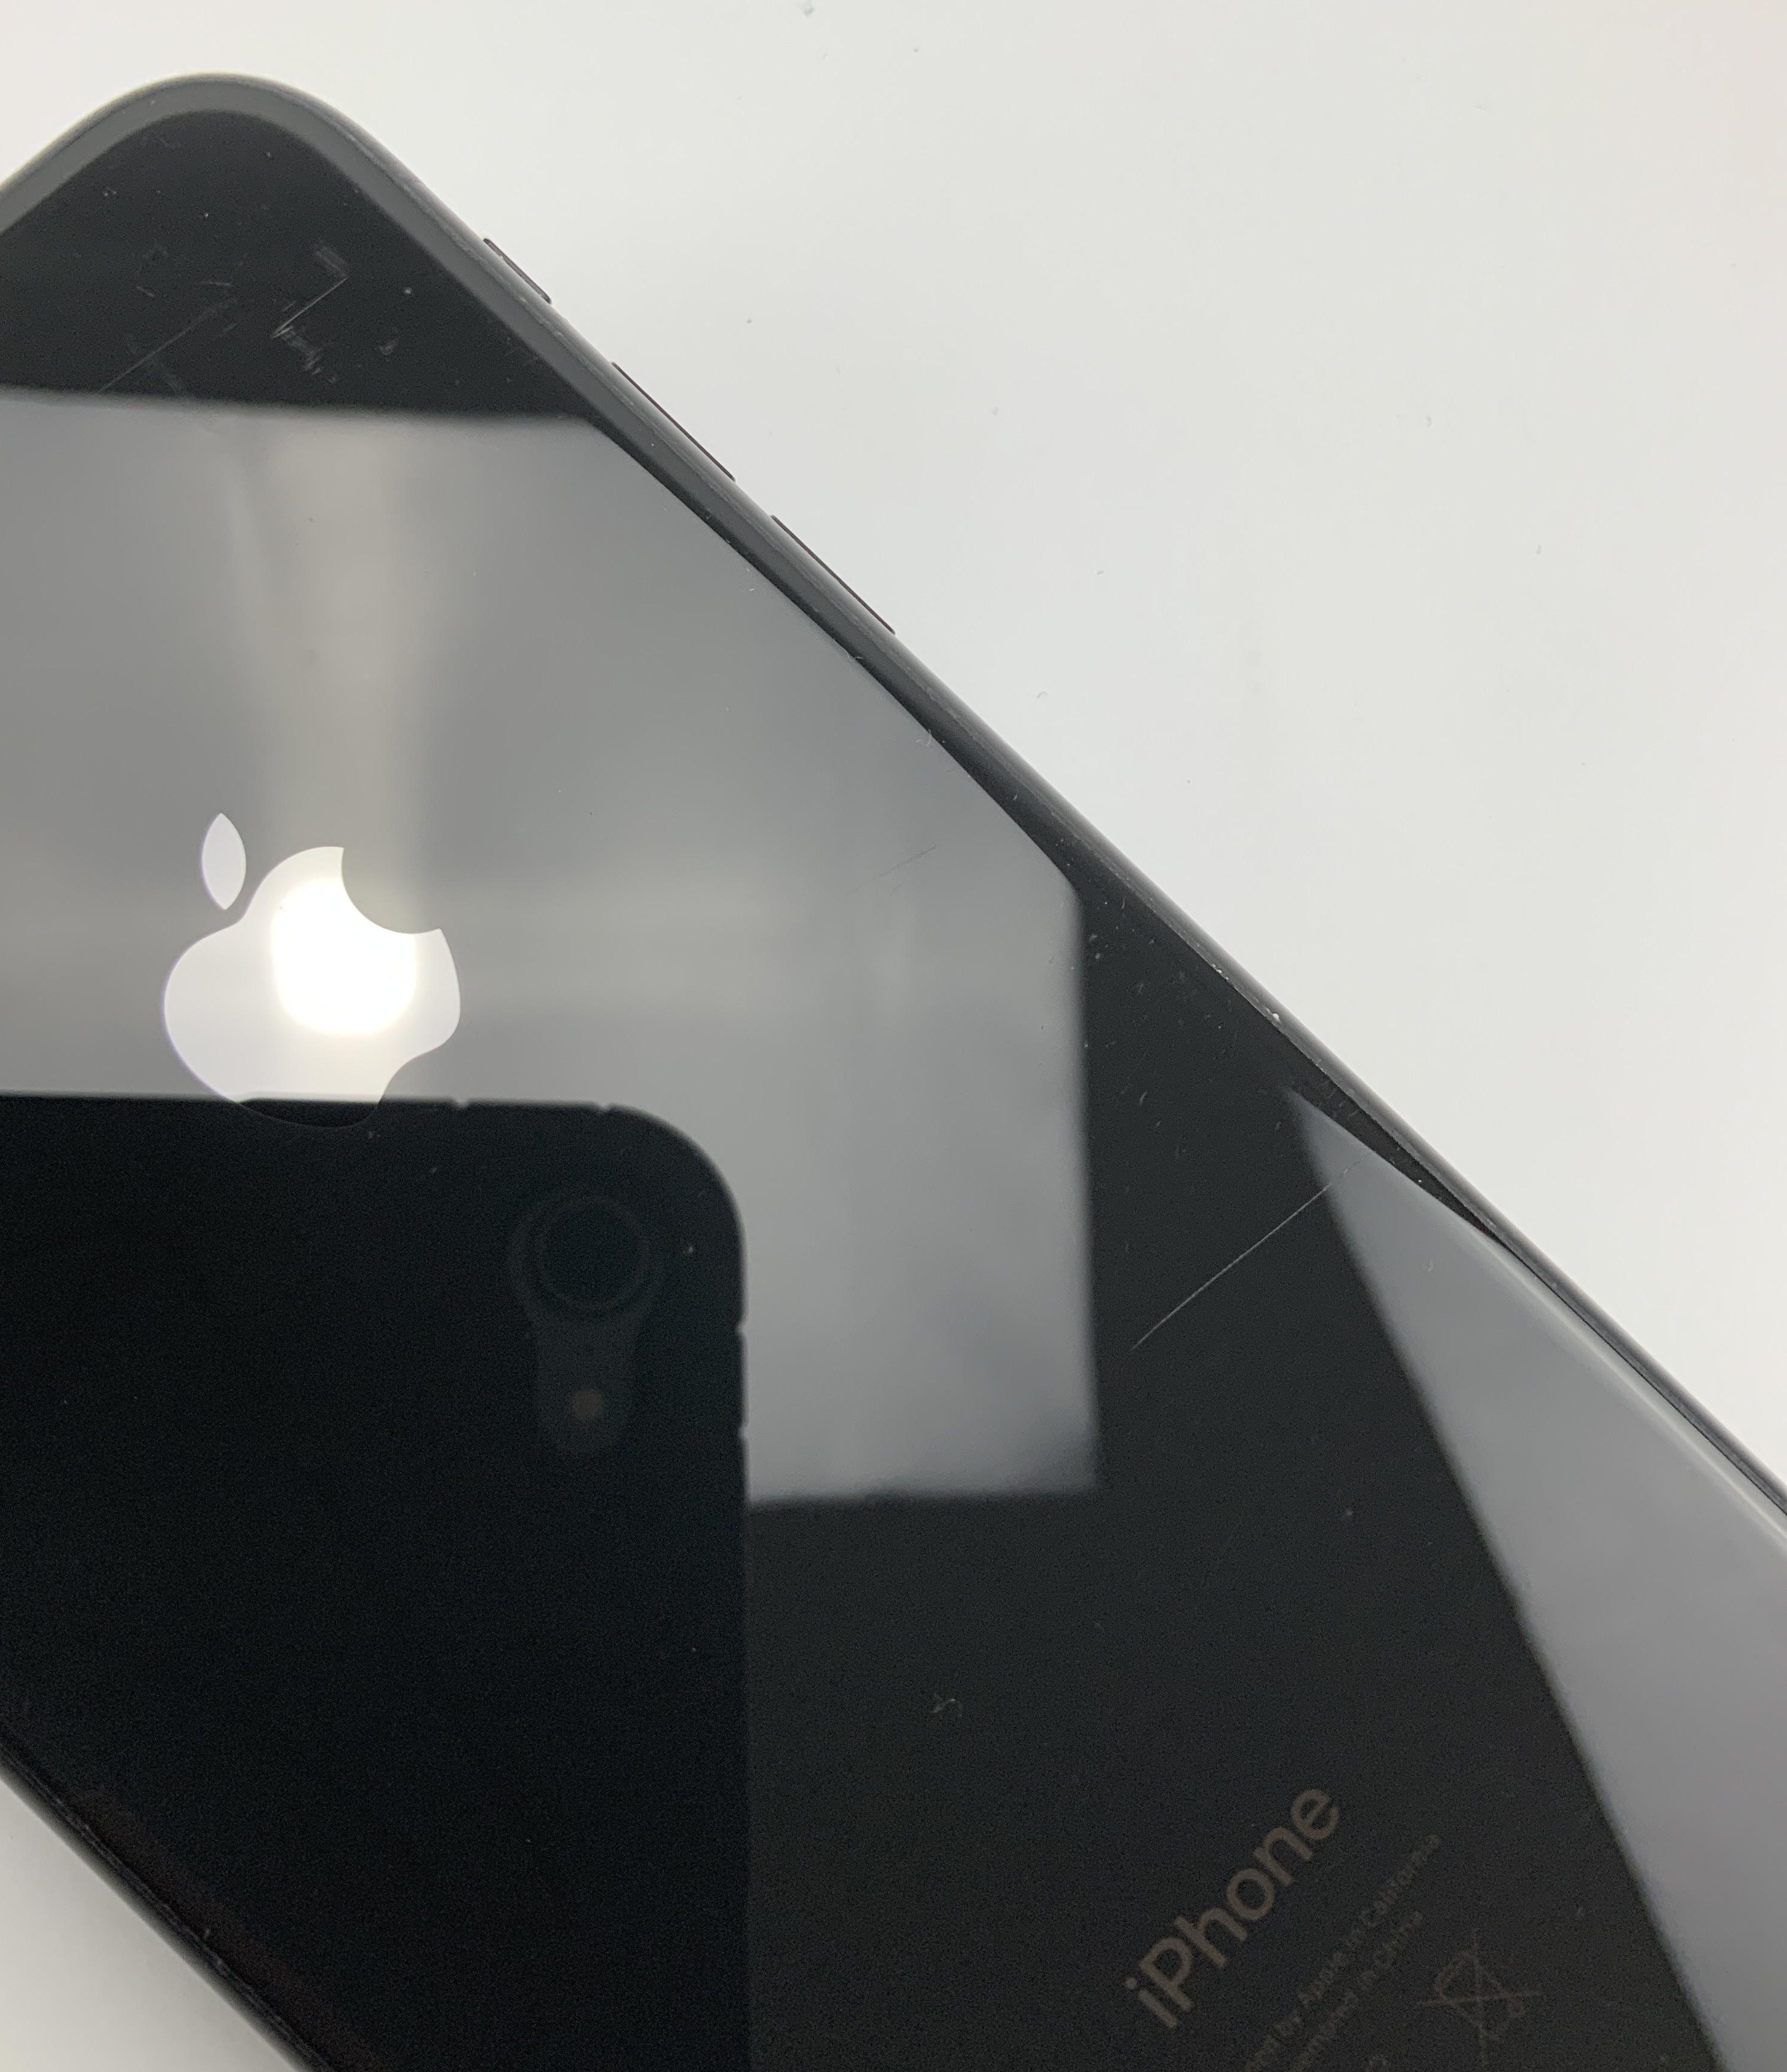 iPhone XR 64GB, 64GB, Black, immagine 4